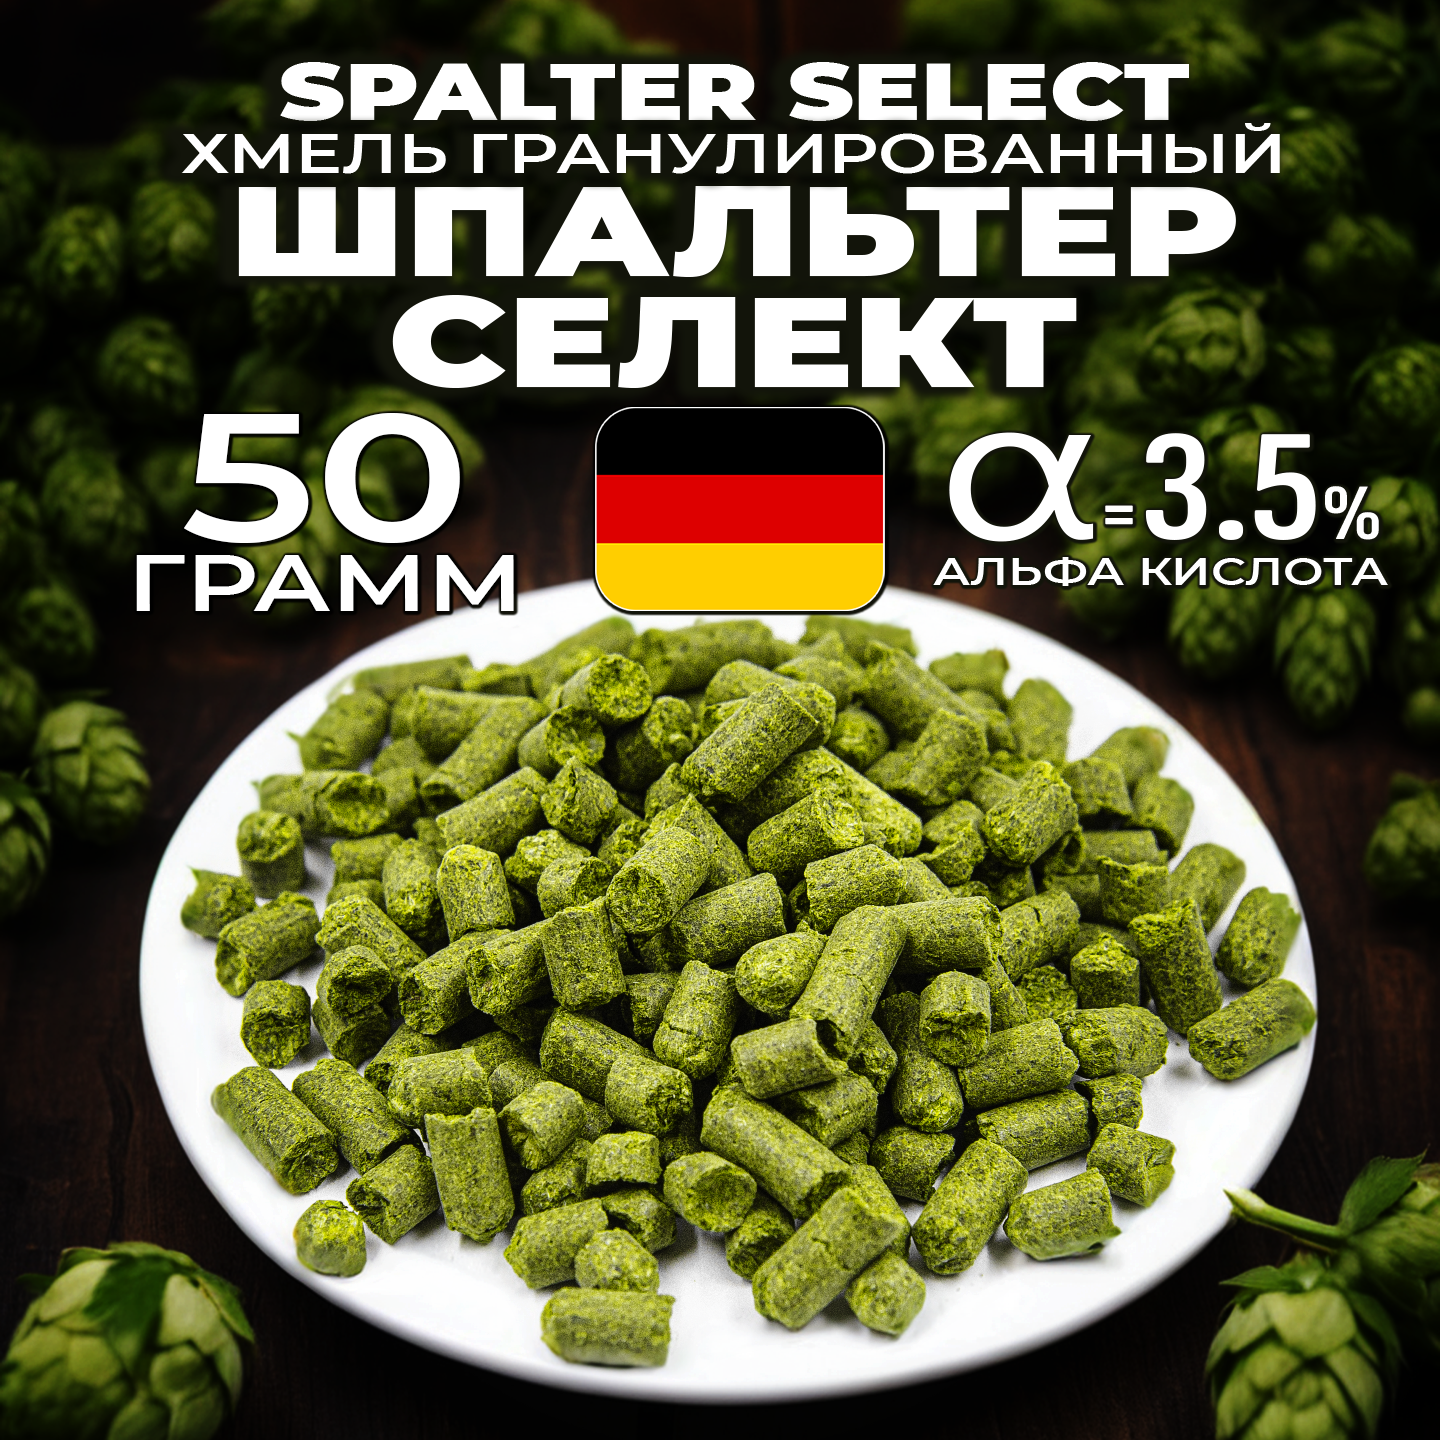 Хмель для пива Шпальтер Селект (Spalter Select) гранулированный, ароматный, 50 г